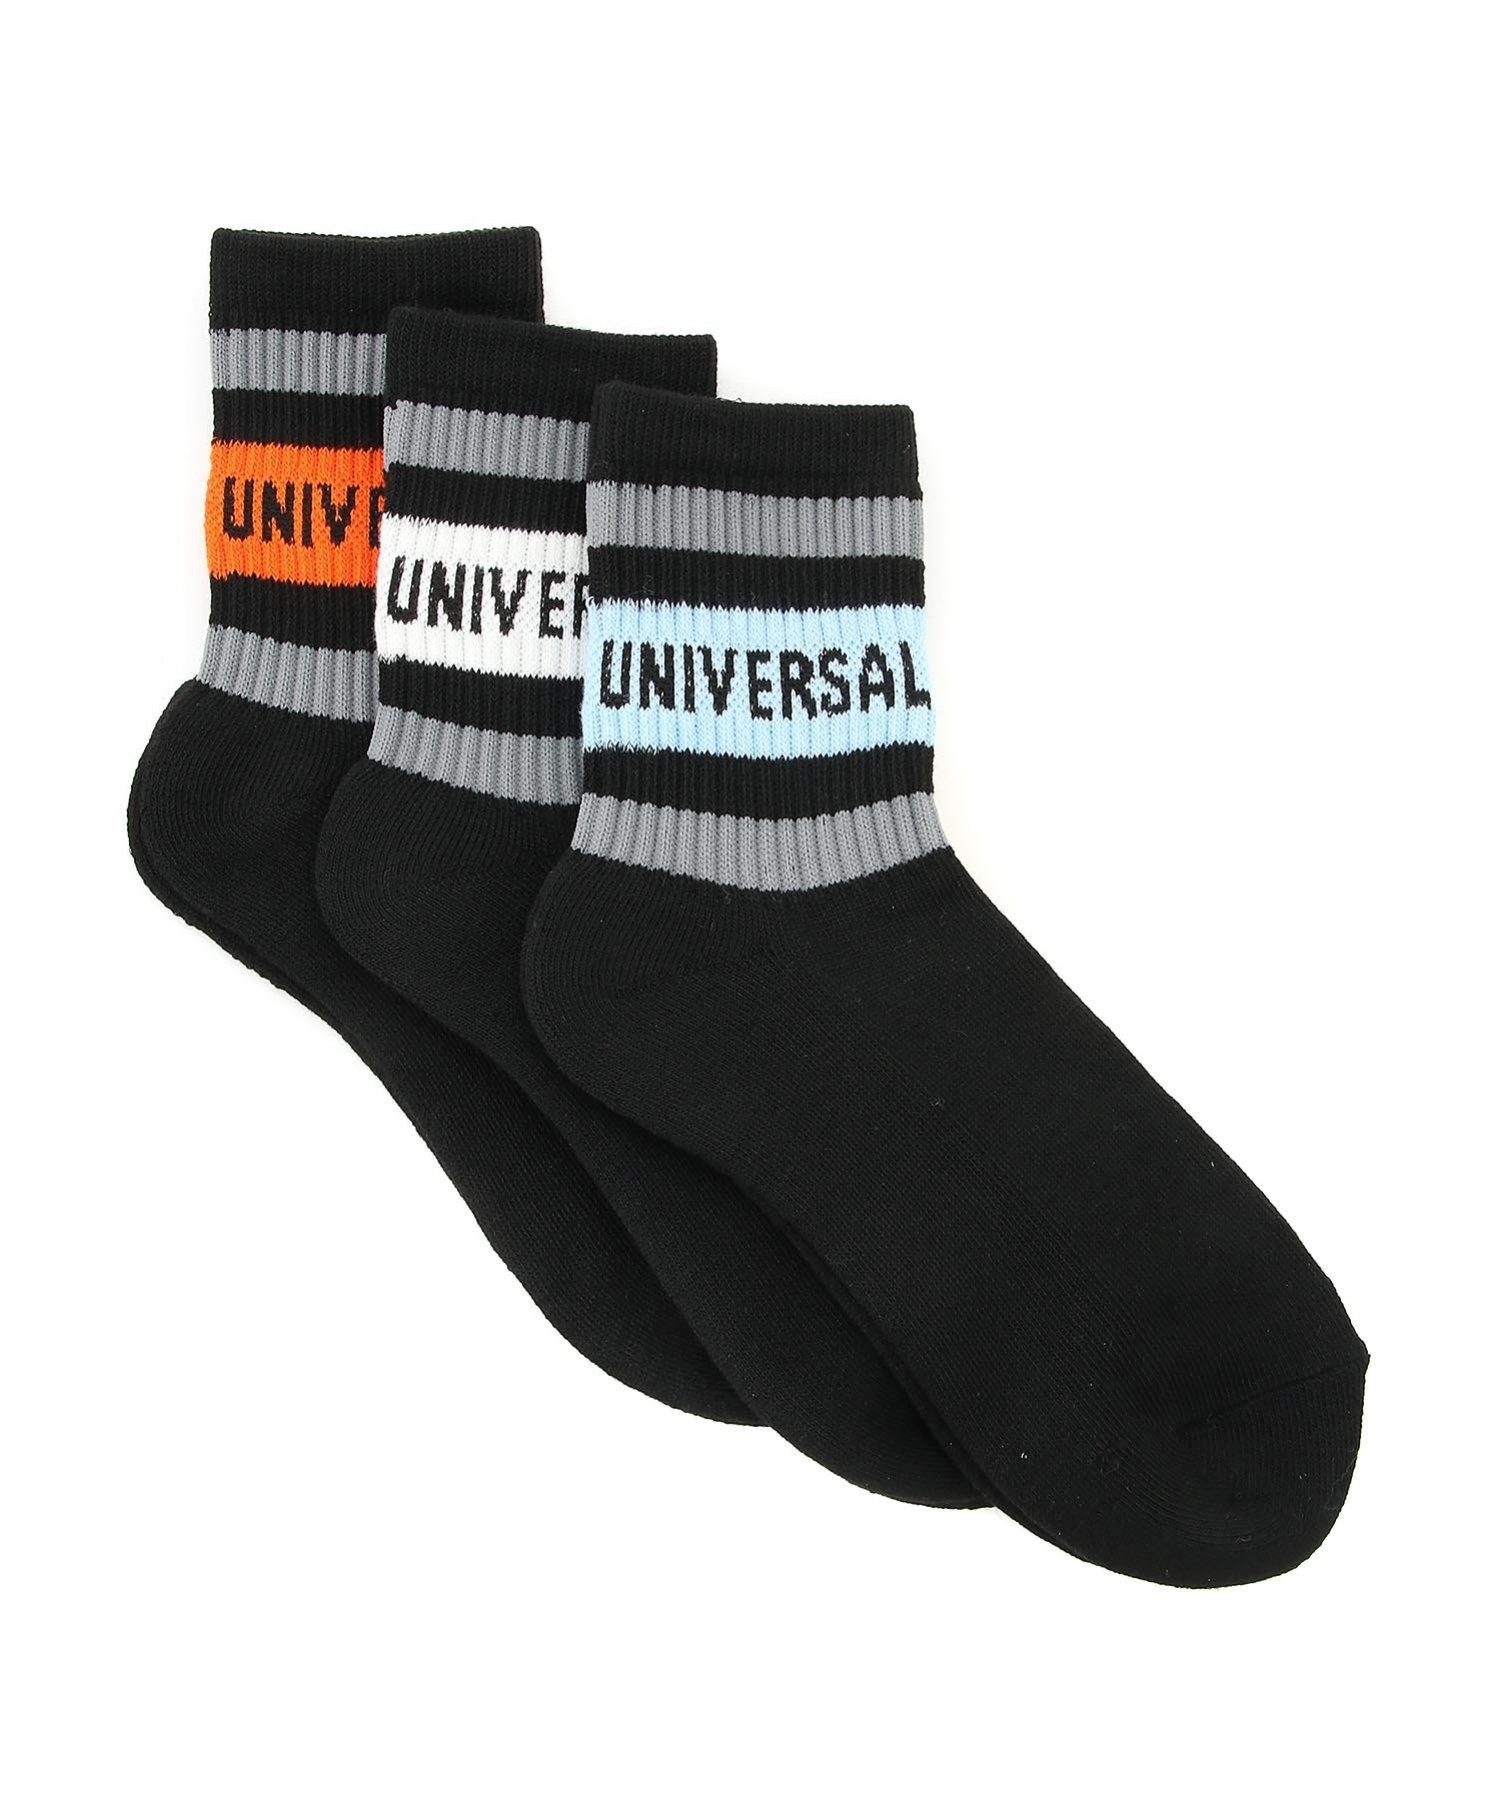 UNIVERSAL OVERALL (U)UNIVERSAL OVERALL/UNIVERSAL OVERALL 3P ロークルーリラインソックス BLK ジャックローズ 靴下・レッグウェア 靴下 ブラック